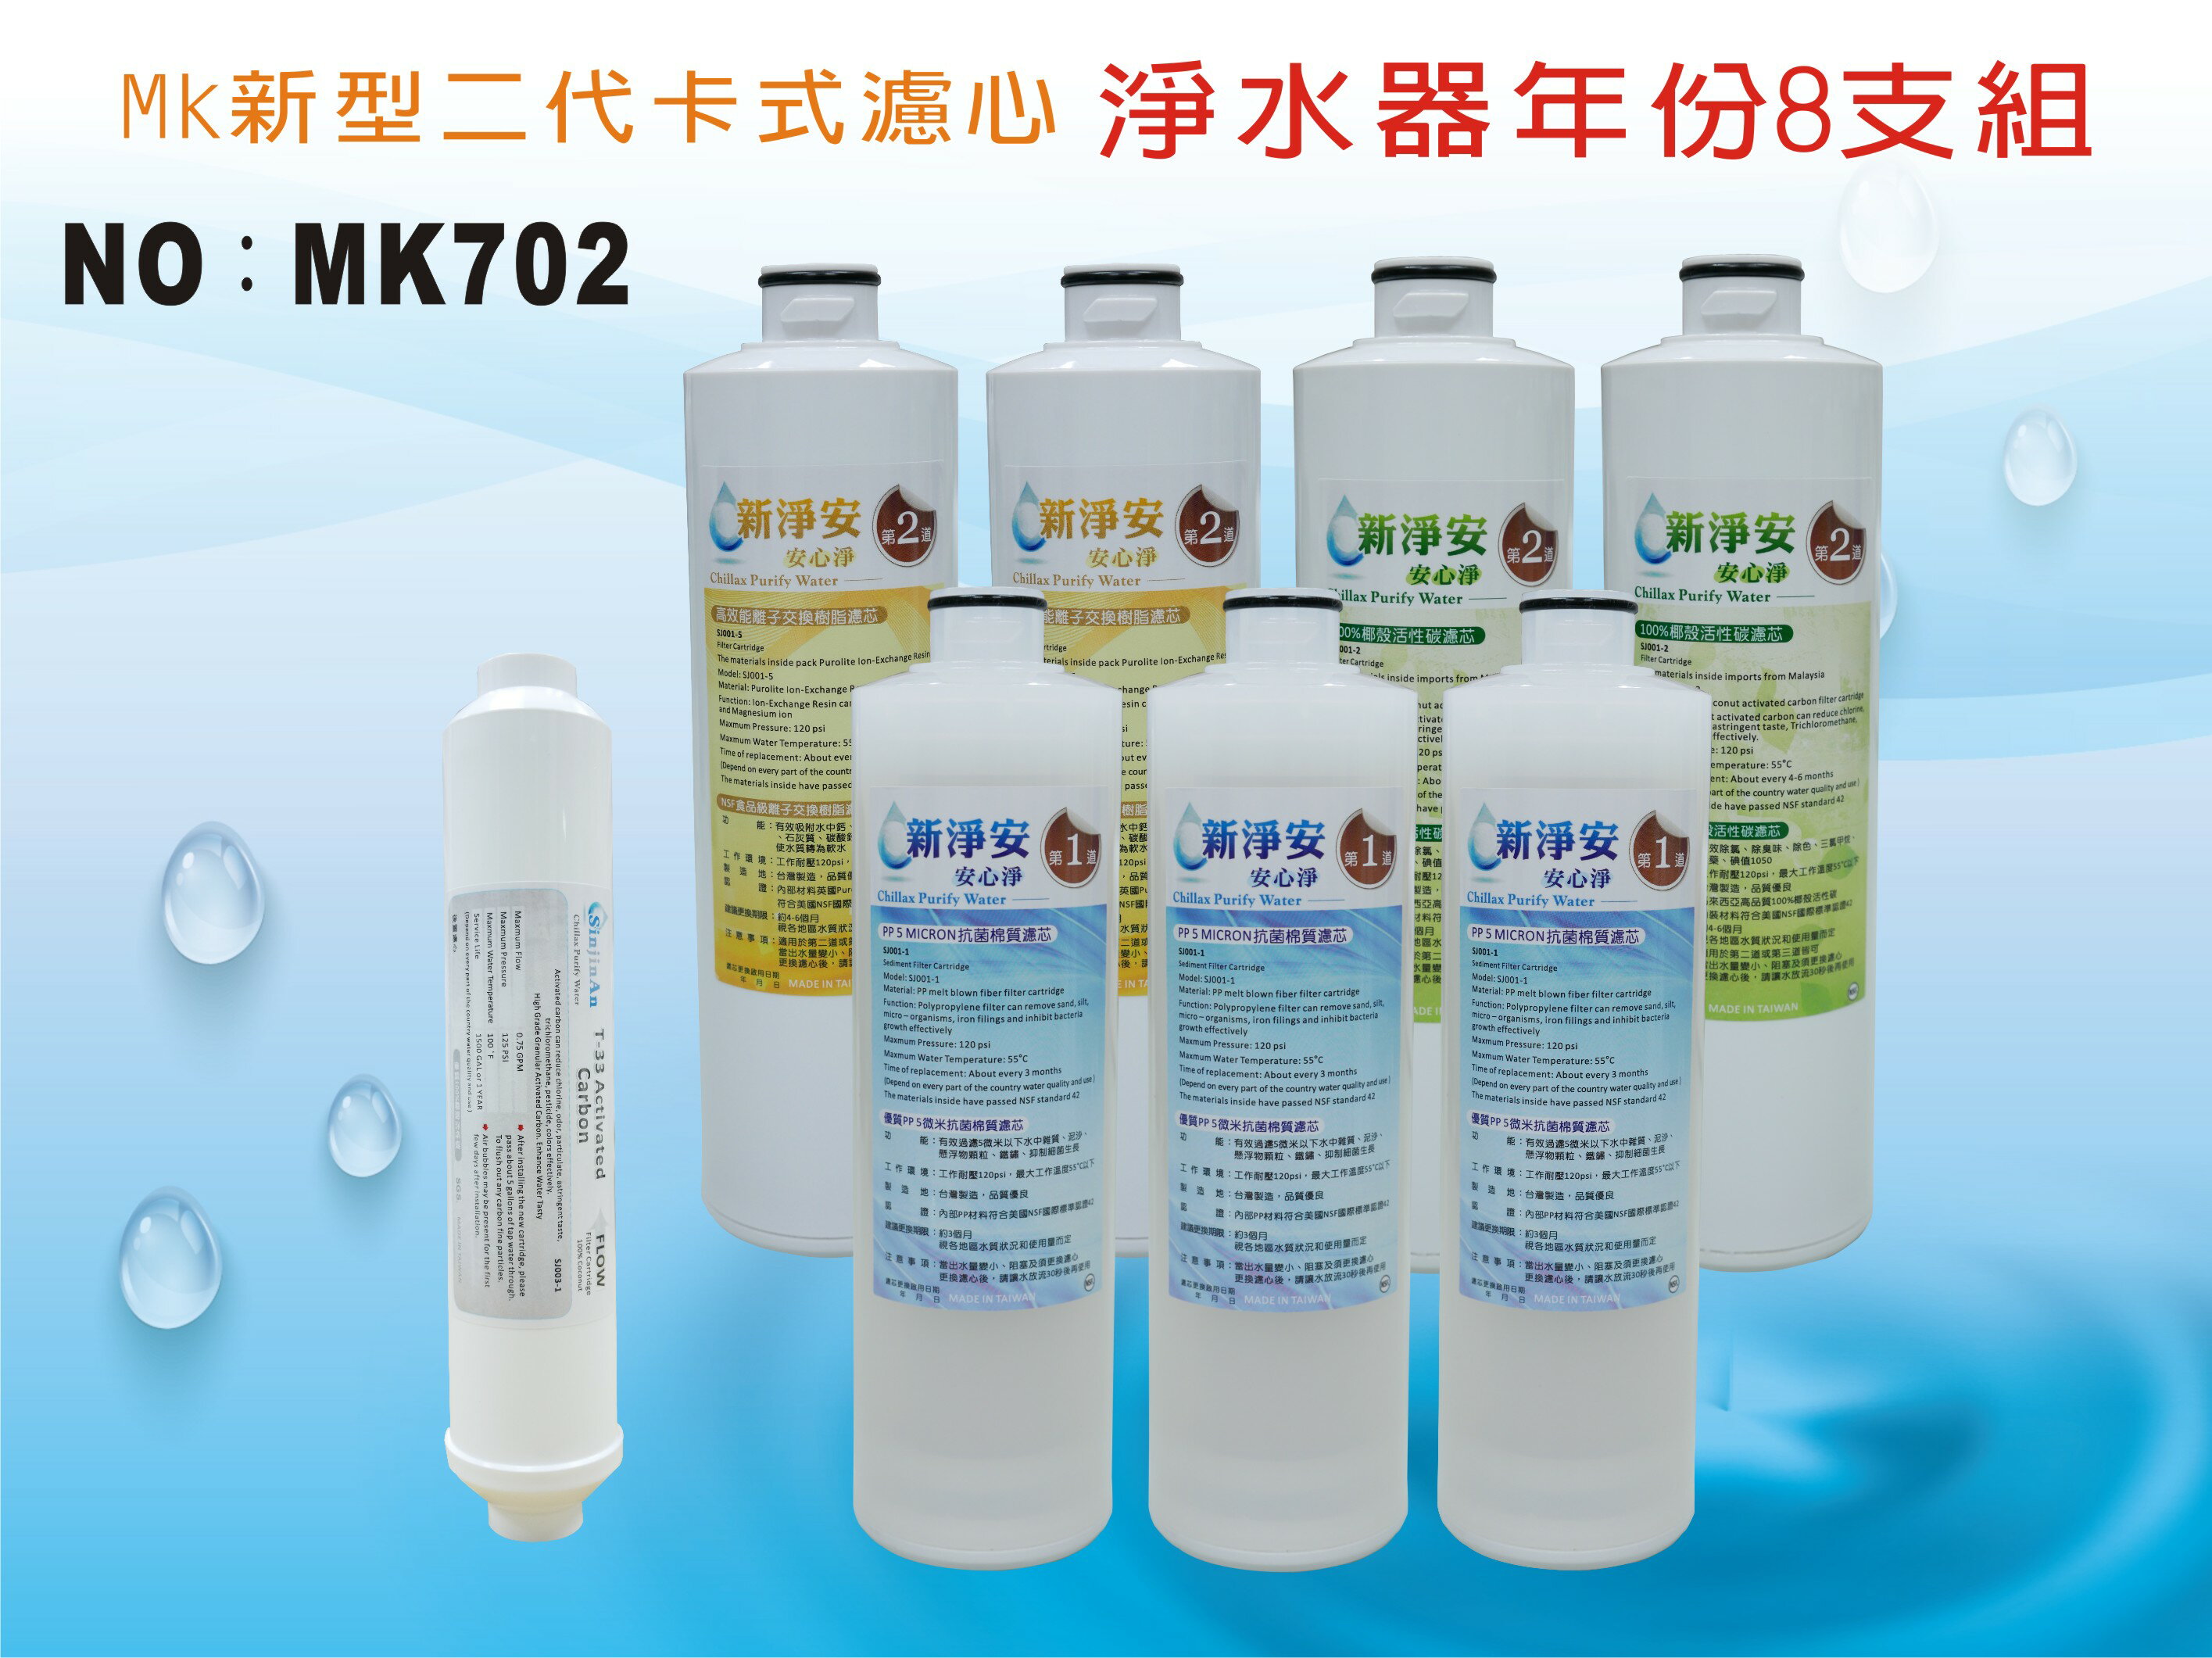 【龍門淨水】 MK二代卡式淨水器年份濾心8支組 PP 樹脂 活性碳 飲水機 淨水器(MK702)